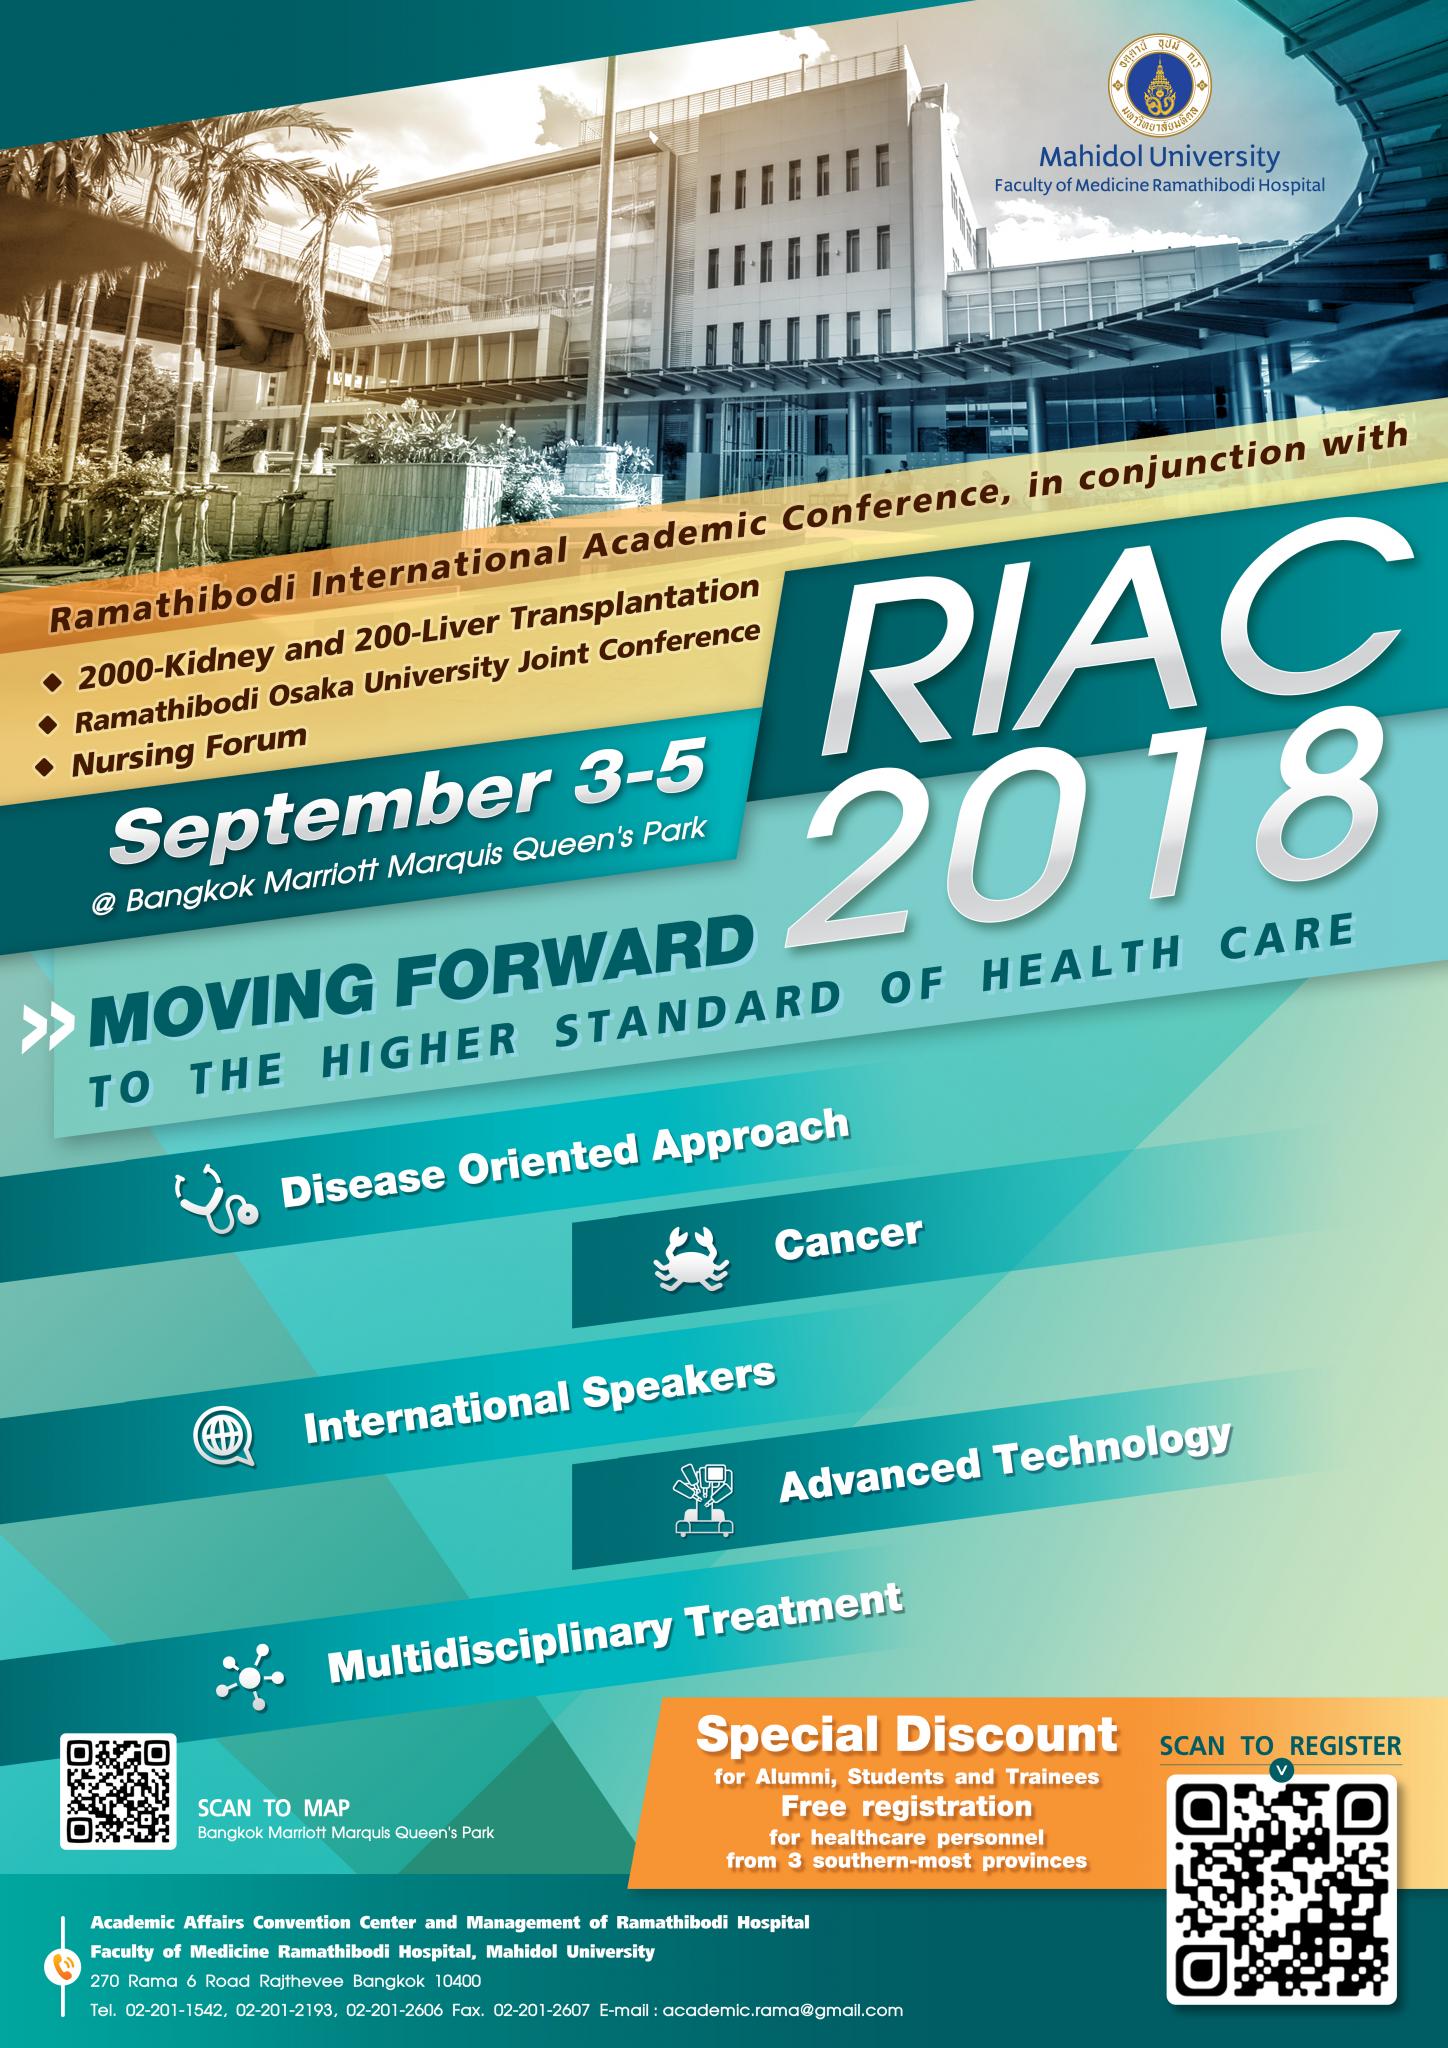 ประชุมวิชาการประจำปี 2561 Ramathibodi international Academic Conference (RIAC)2018